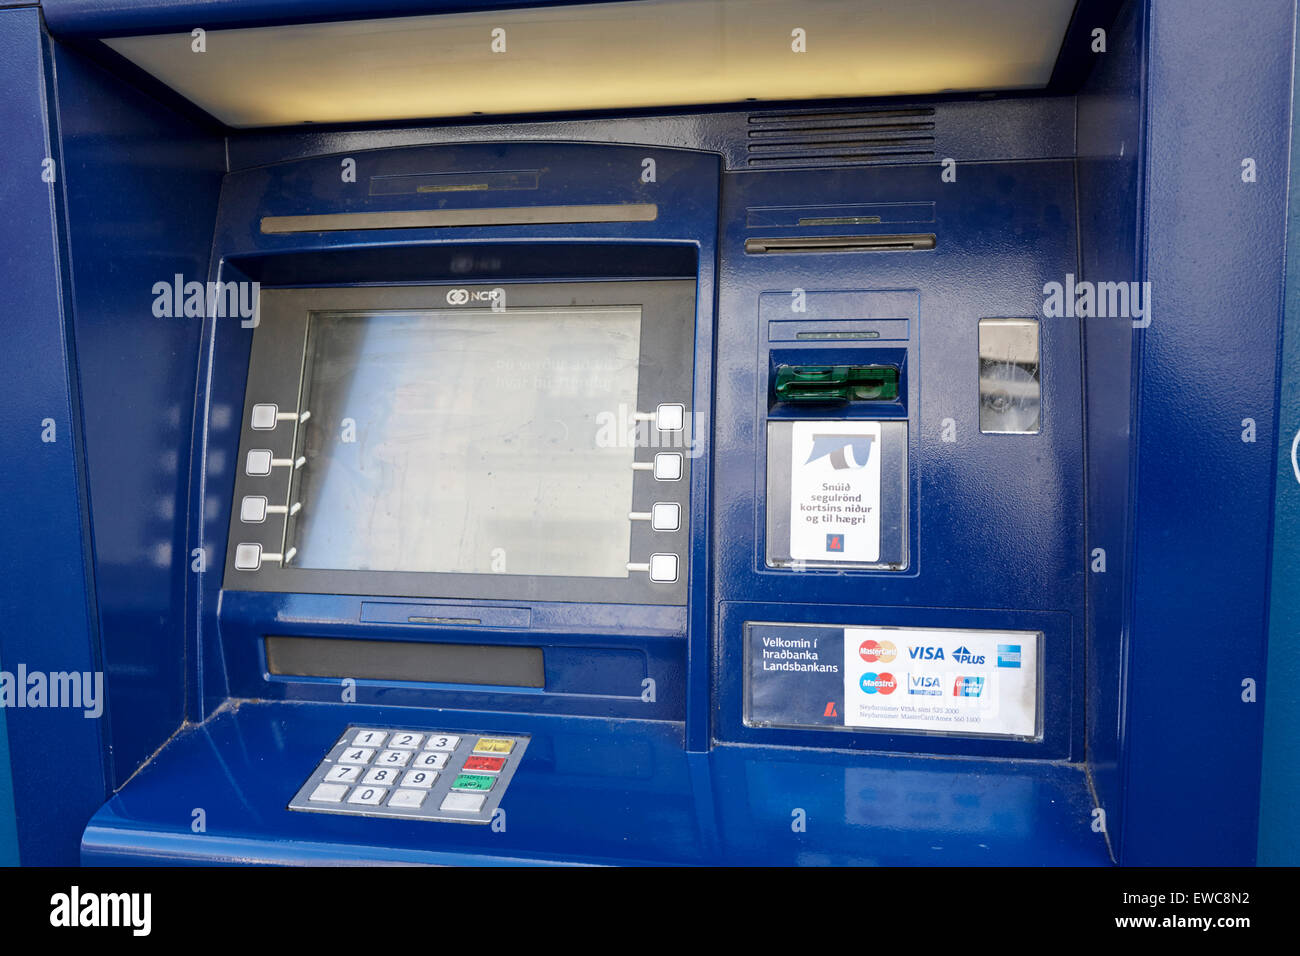 Hradbanki landsbankinn cash machine atm Reykjavik Islande Banque D'Images